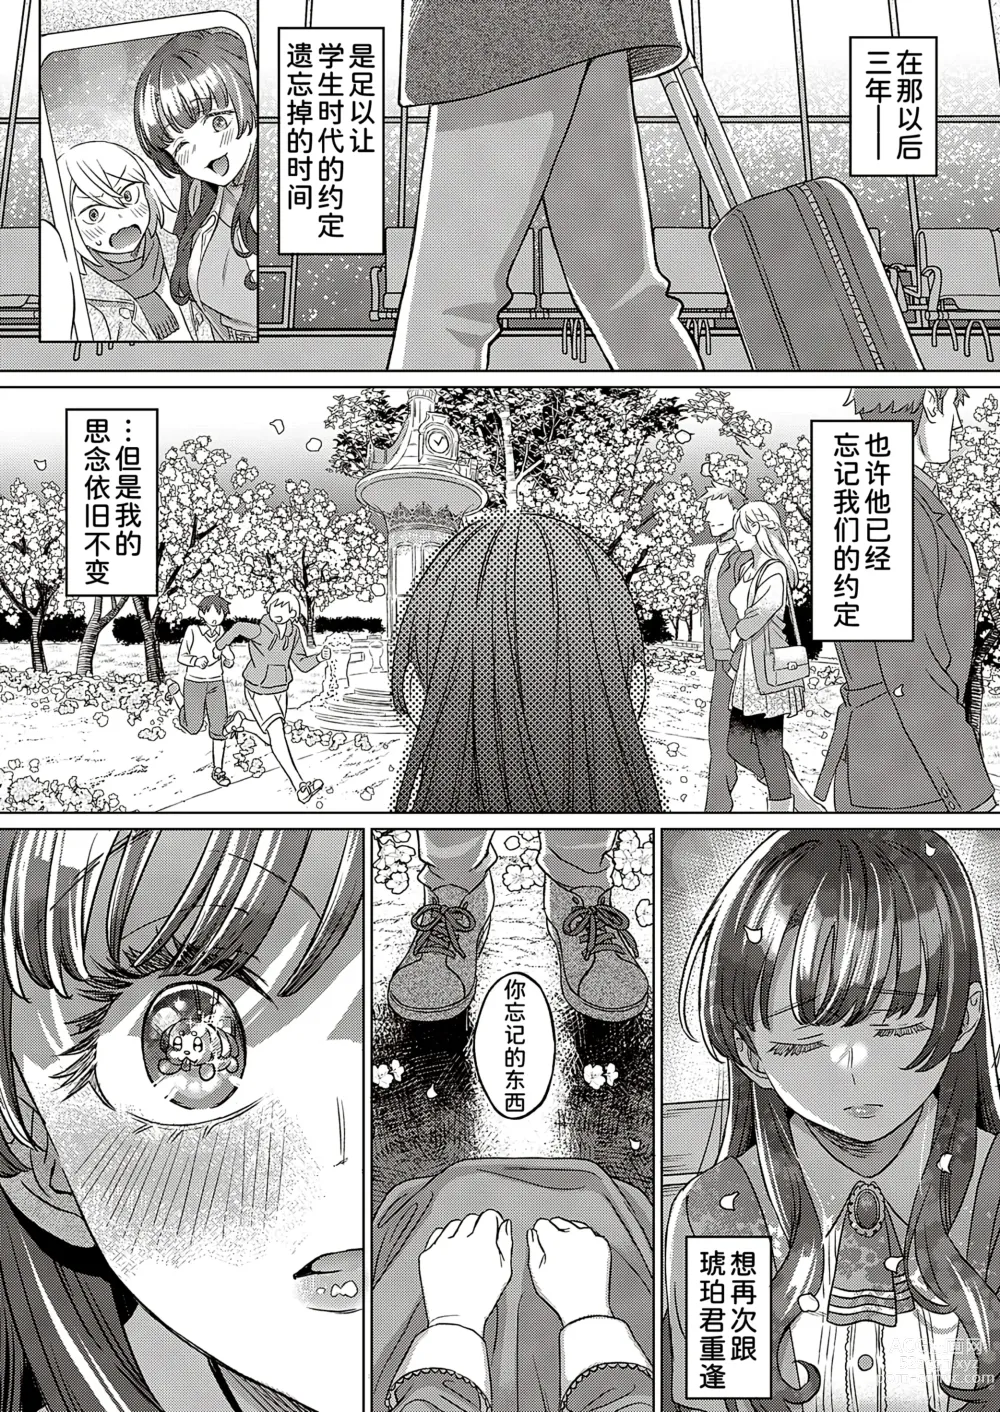 Page 39 of manga Kohakuiro no Machi, Sakura ga Ita Kisetsu